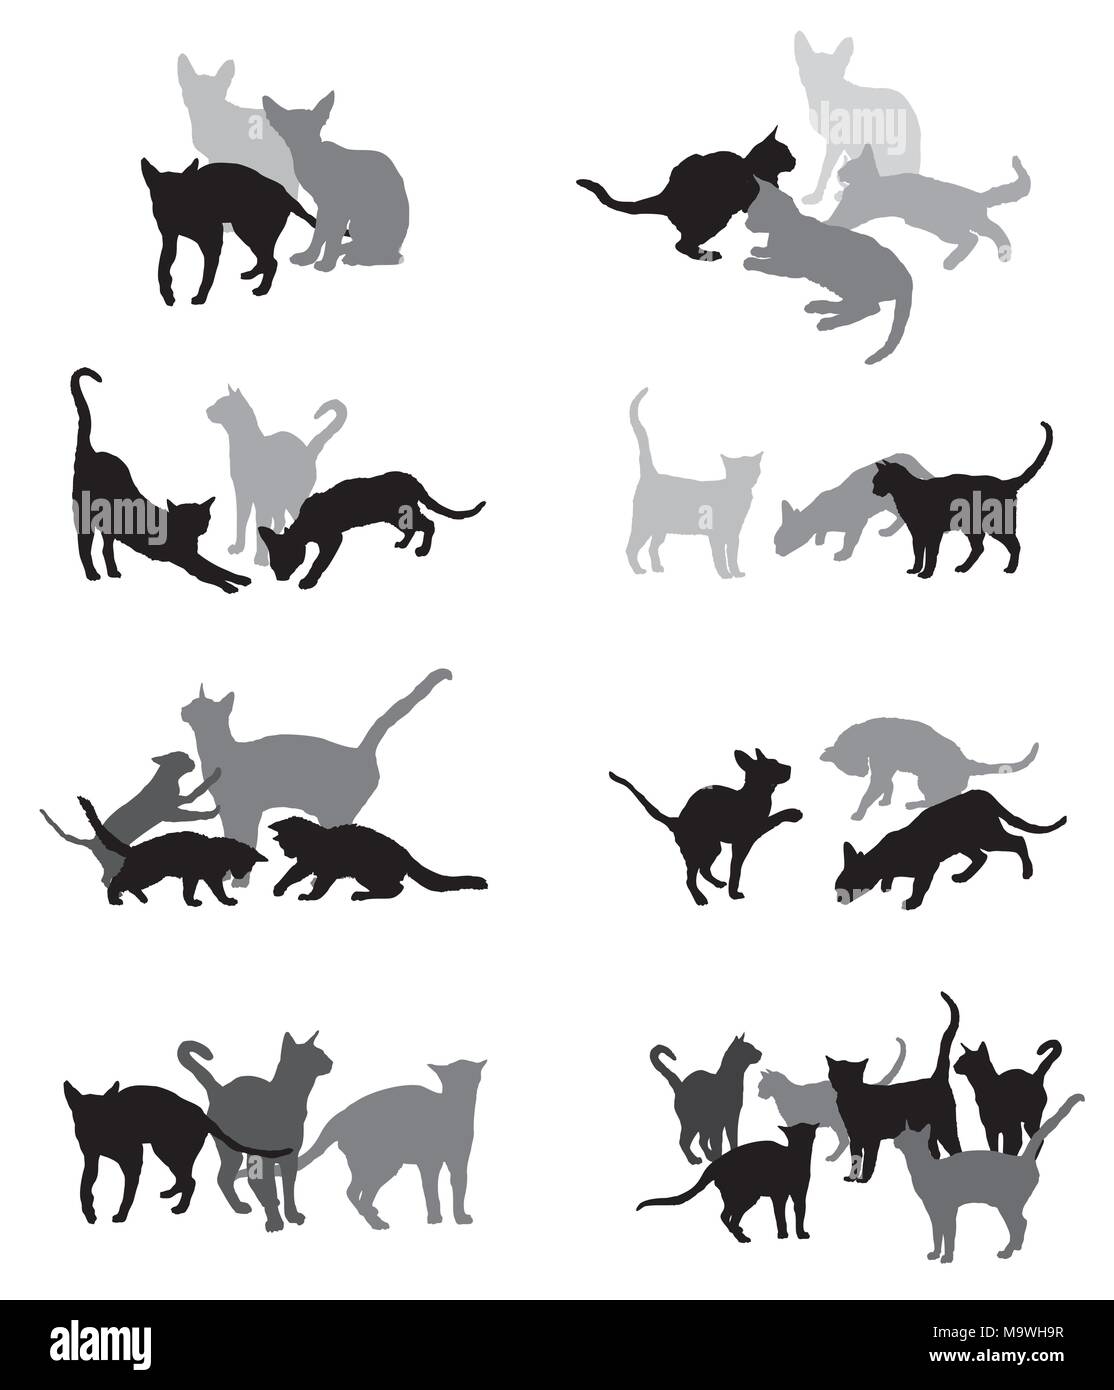 Set vektor Silhouetten Gruppe von verschiedenen Rassen Katzen Silhouetten (Sitzen, Stehen, Liegen, Spielen) in schwarzen und grauen Farben isoliert auf weißem Hinterg Stock Vektor